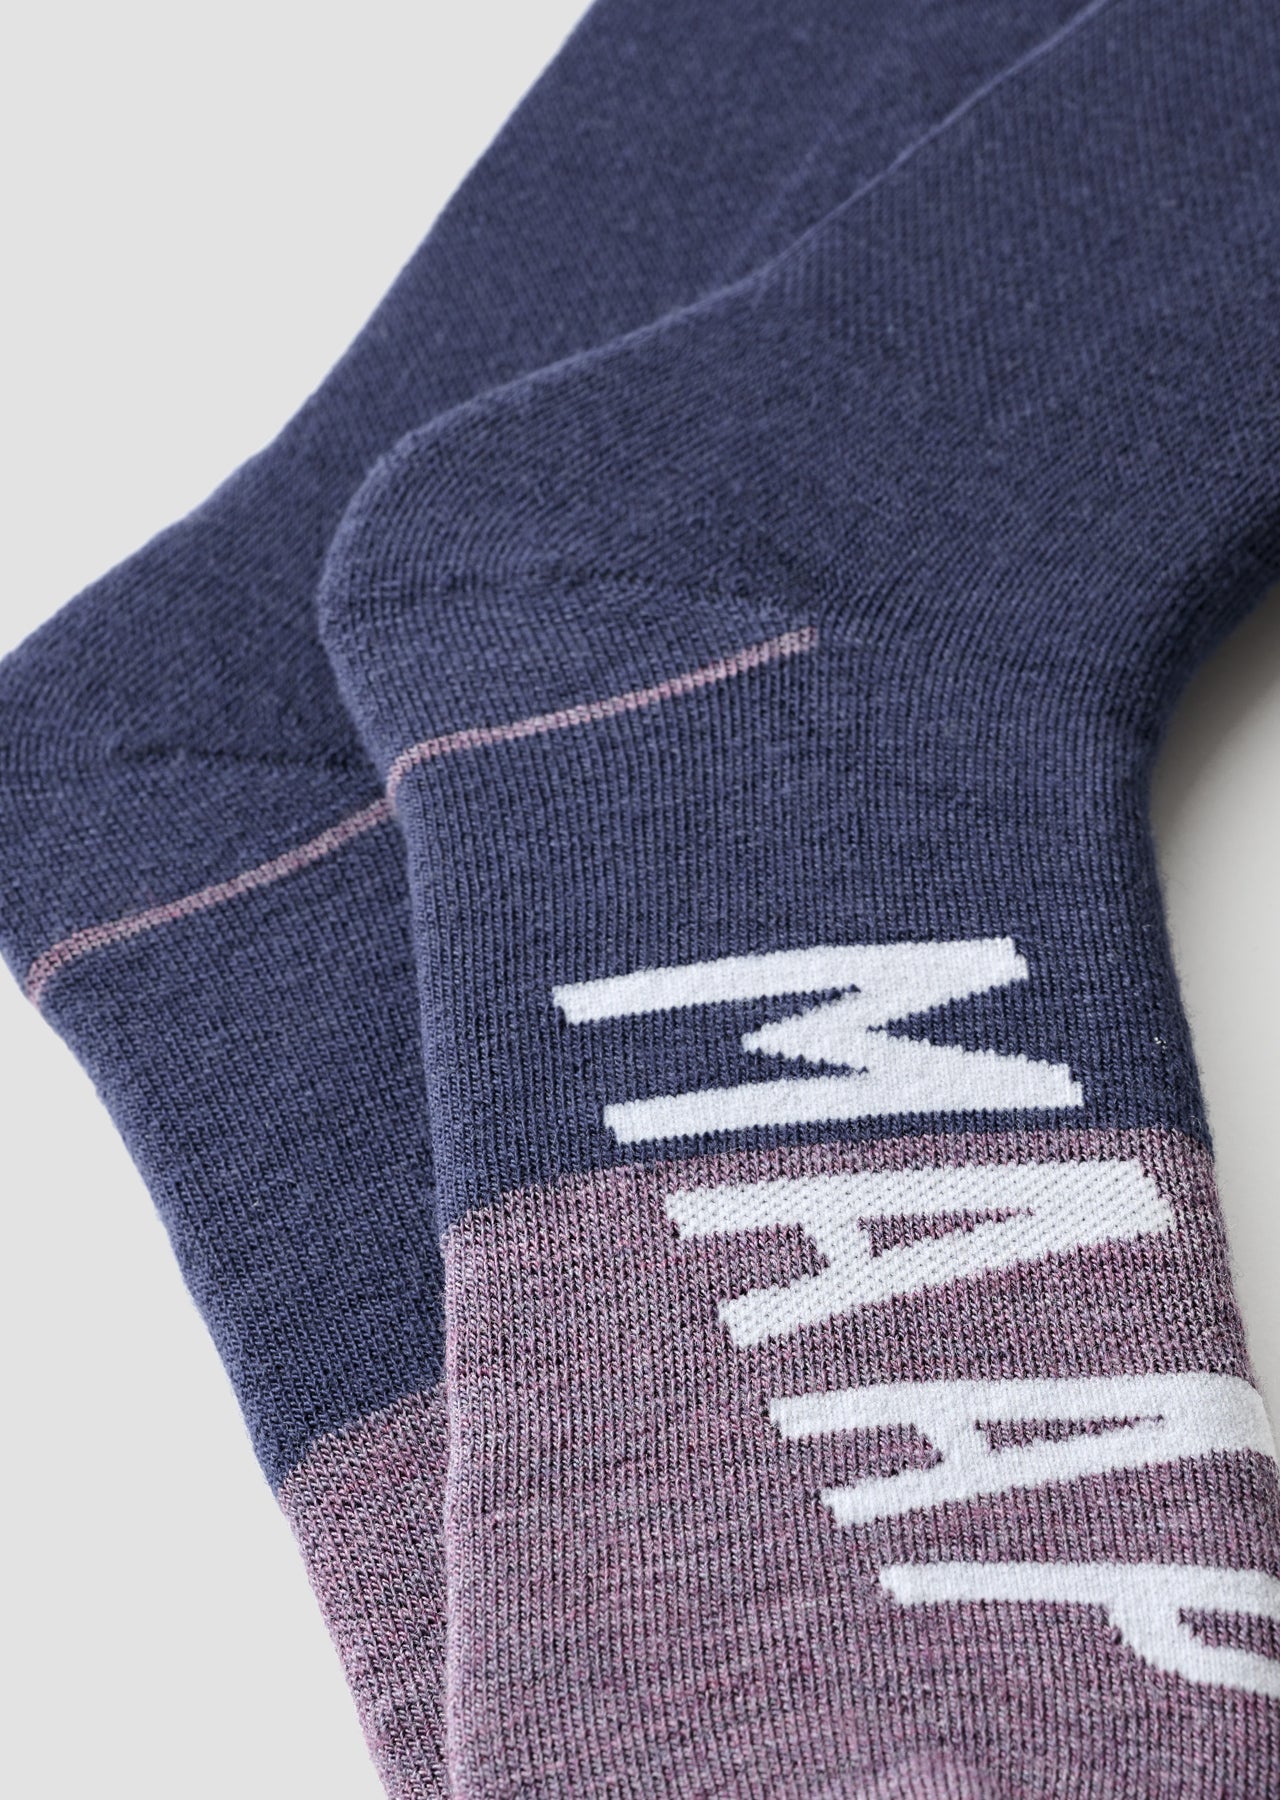 Apex Wool Sock